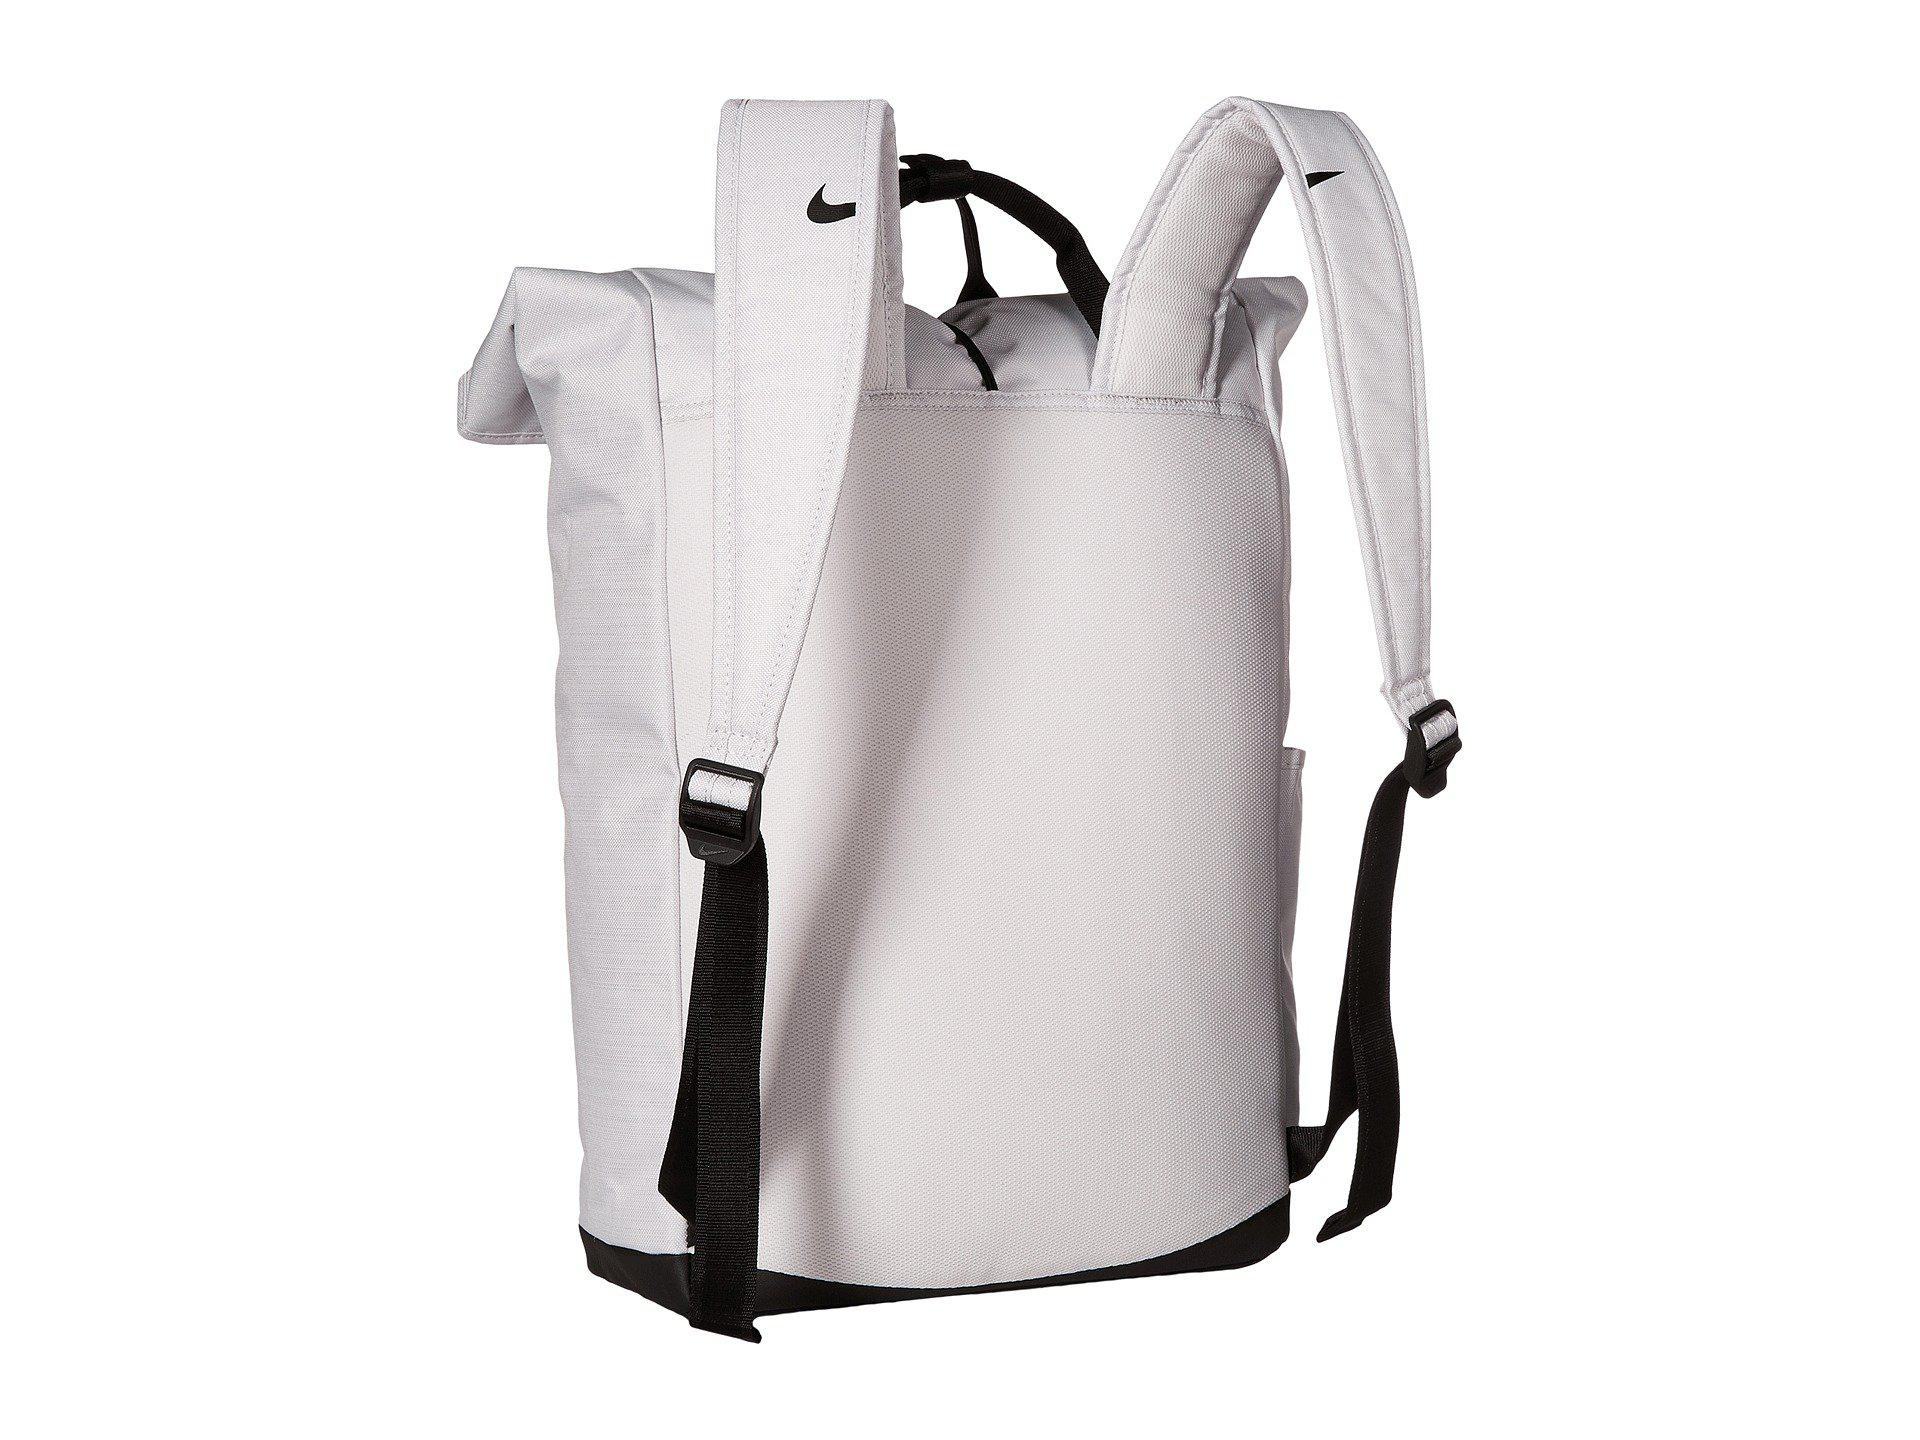 Nike Radiate Backpack (black/black/black) Backpack Bags | Lyst